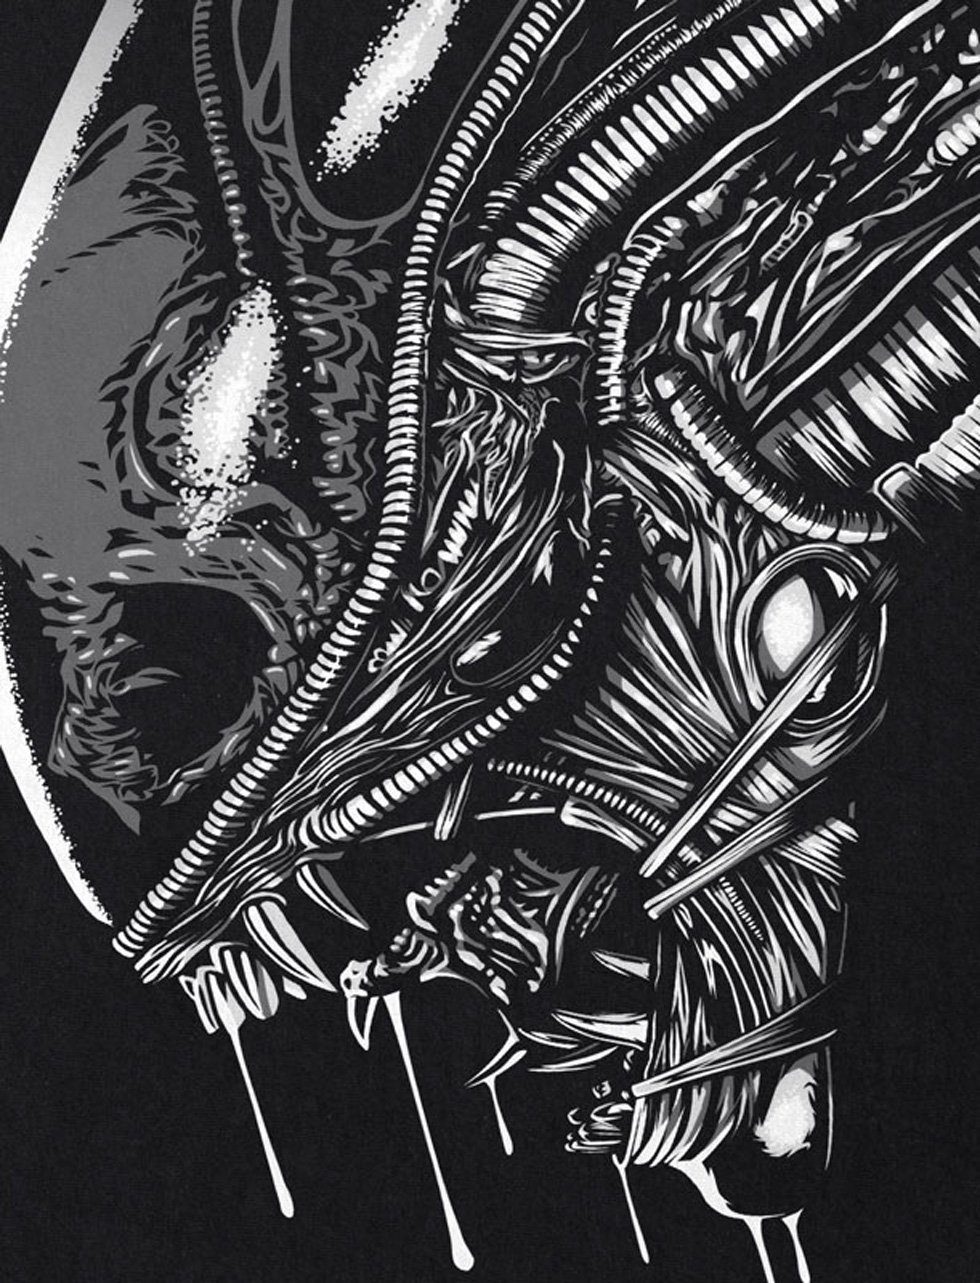 xenomorph in alien T-Shirt Fear Space style3 Herren Print-Shirt ripley